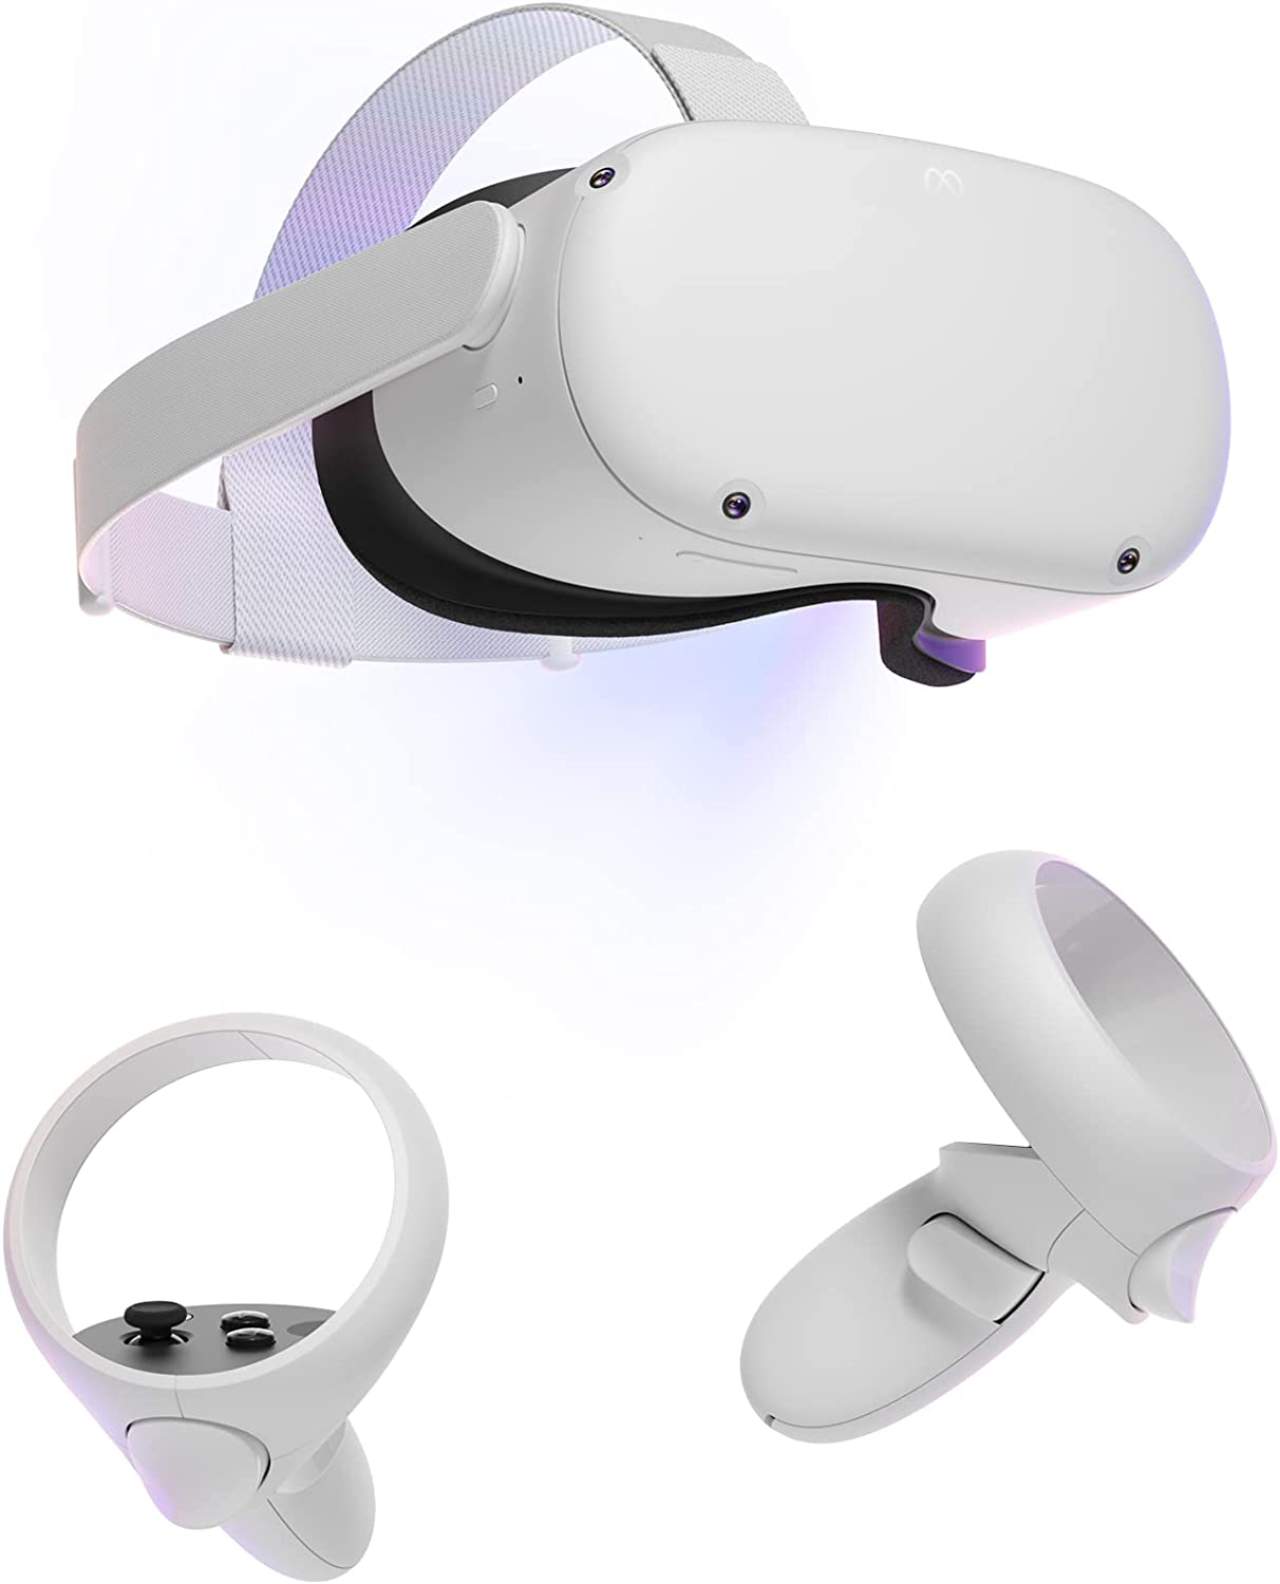 Gli occhiali VR Meta Quest 2